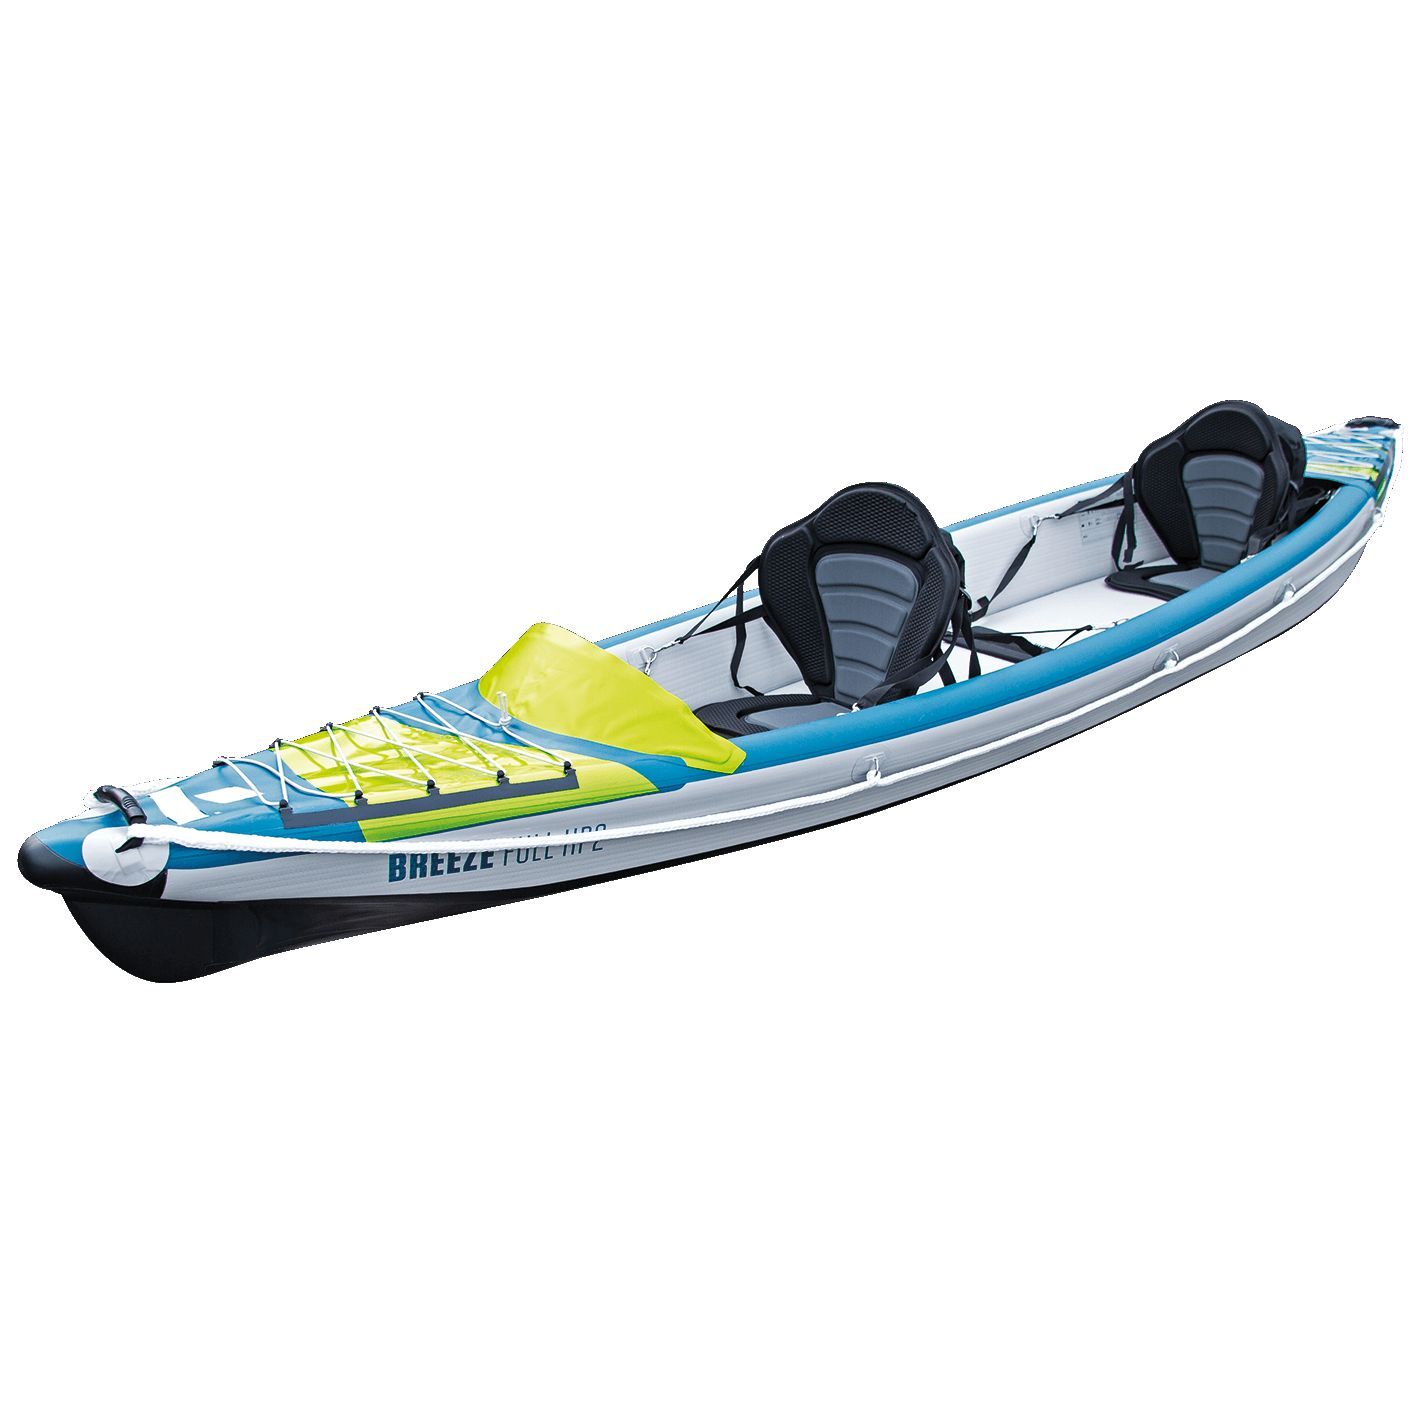 Tahe Outdoor Kayak Air Breeze Full Hp2 - Kayak hinchable